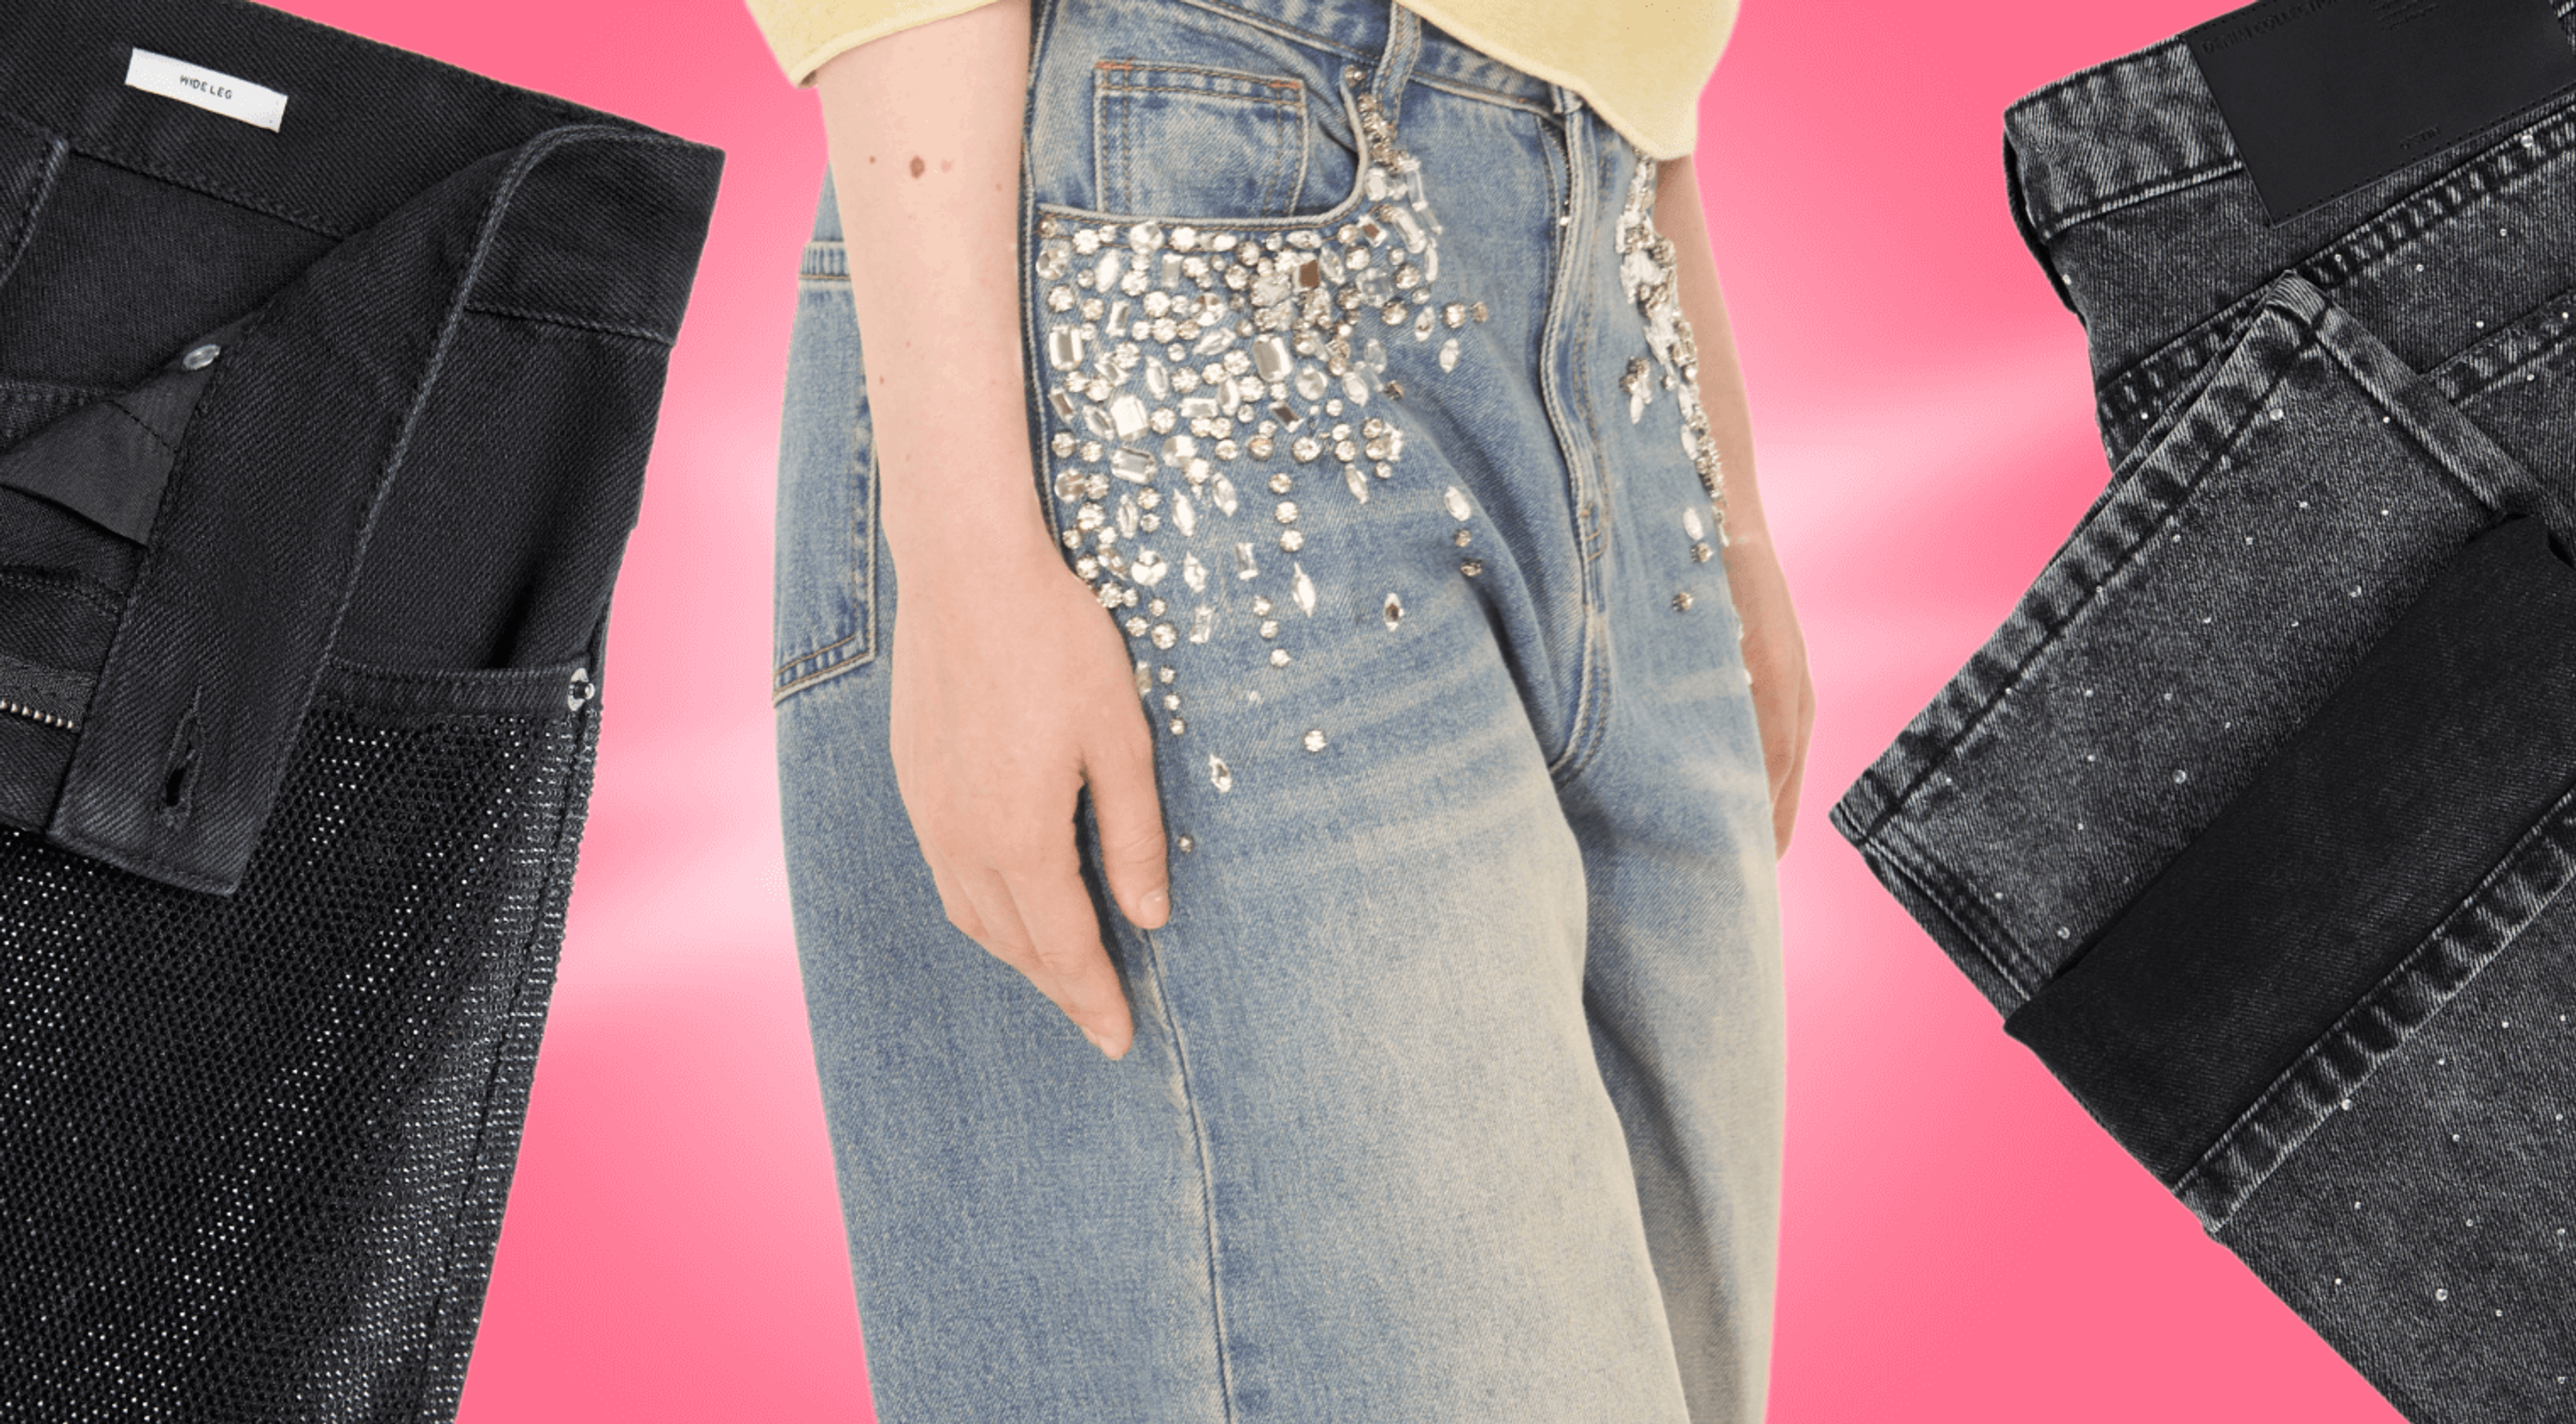 Нарядные джинсы — модели со стразами от 1399 рублей